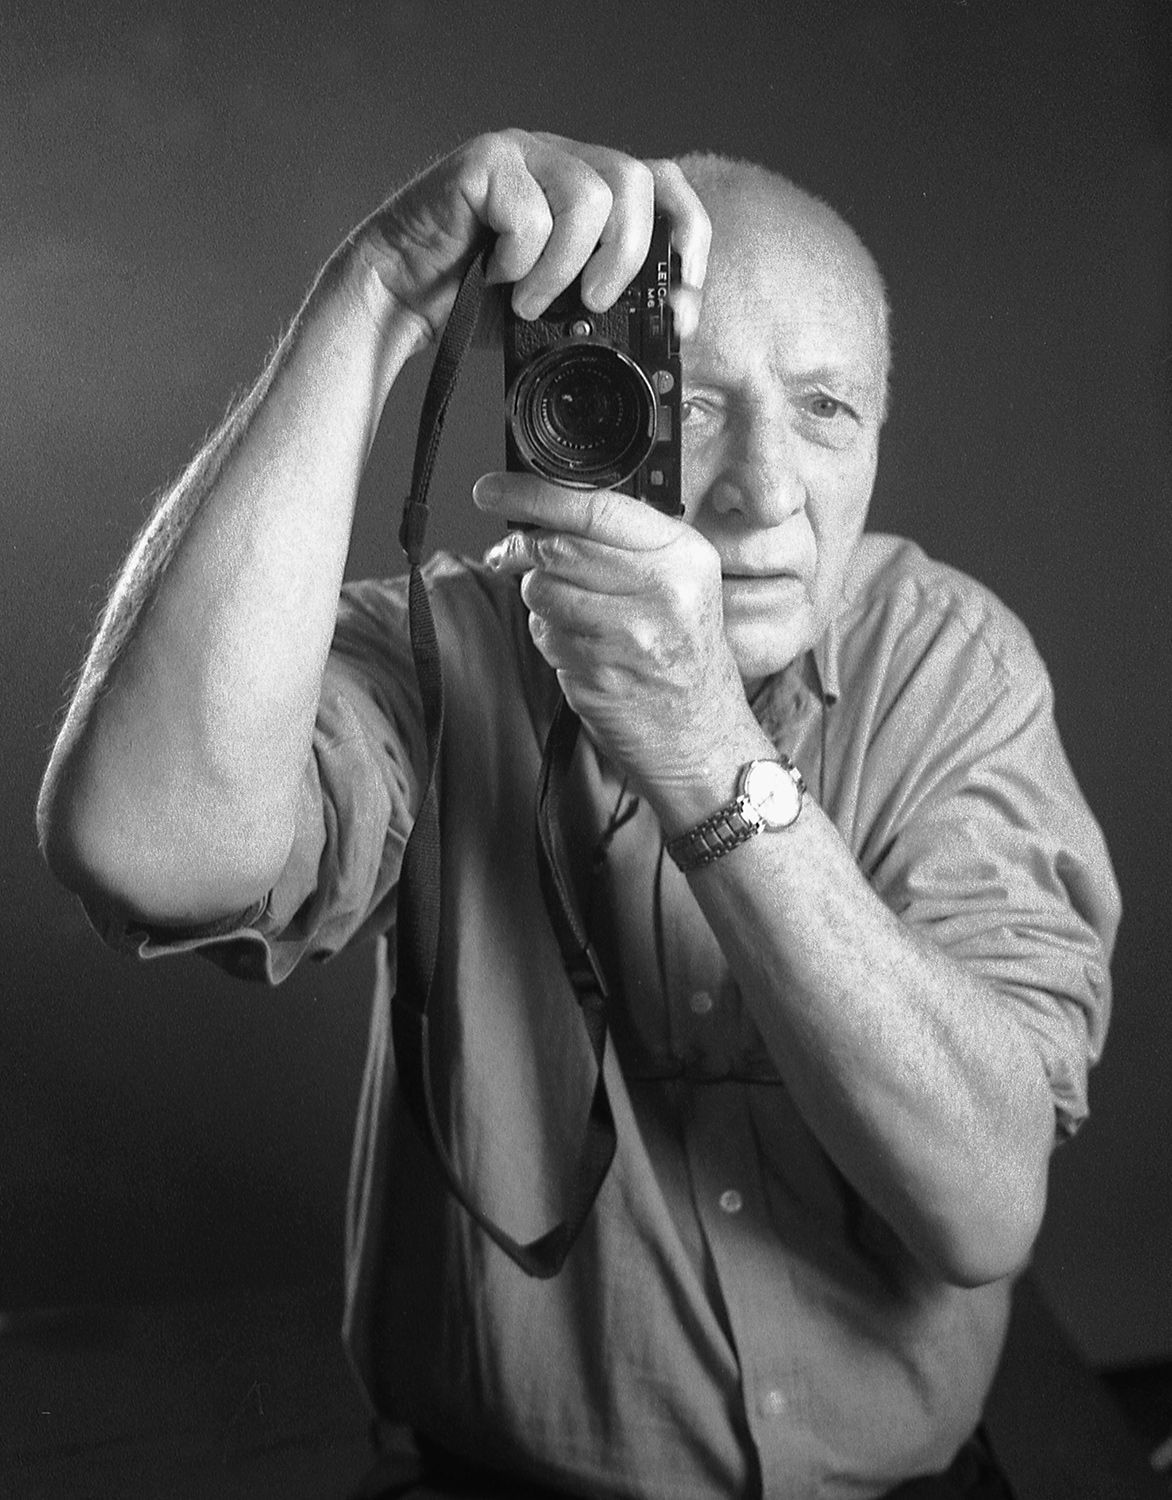 Jürgen Schadeberg, snímky z výstavy v Leica Gallery (nelze použít s jiným článkem)